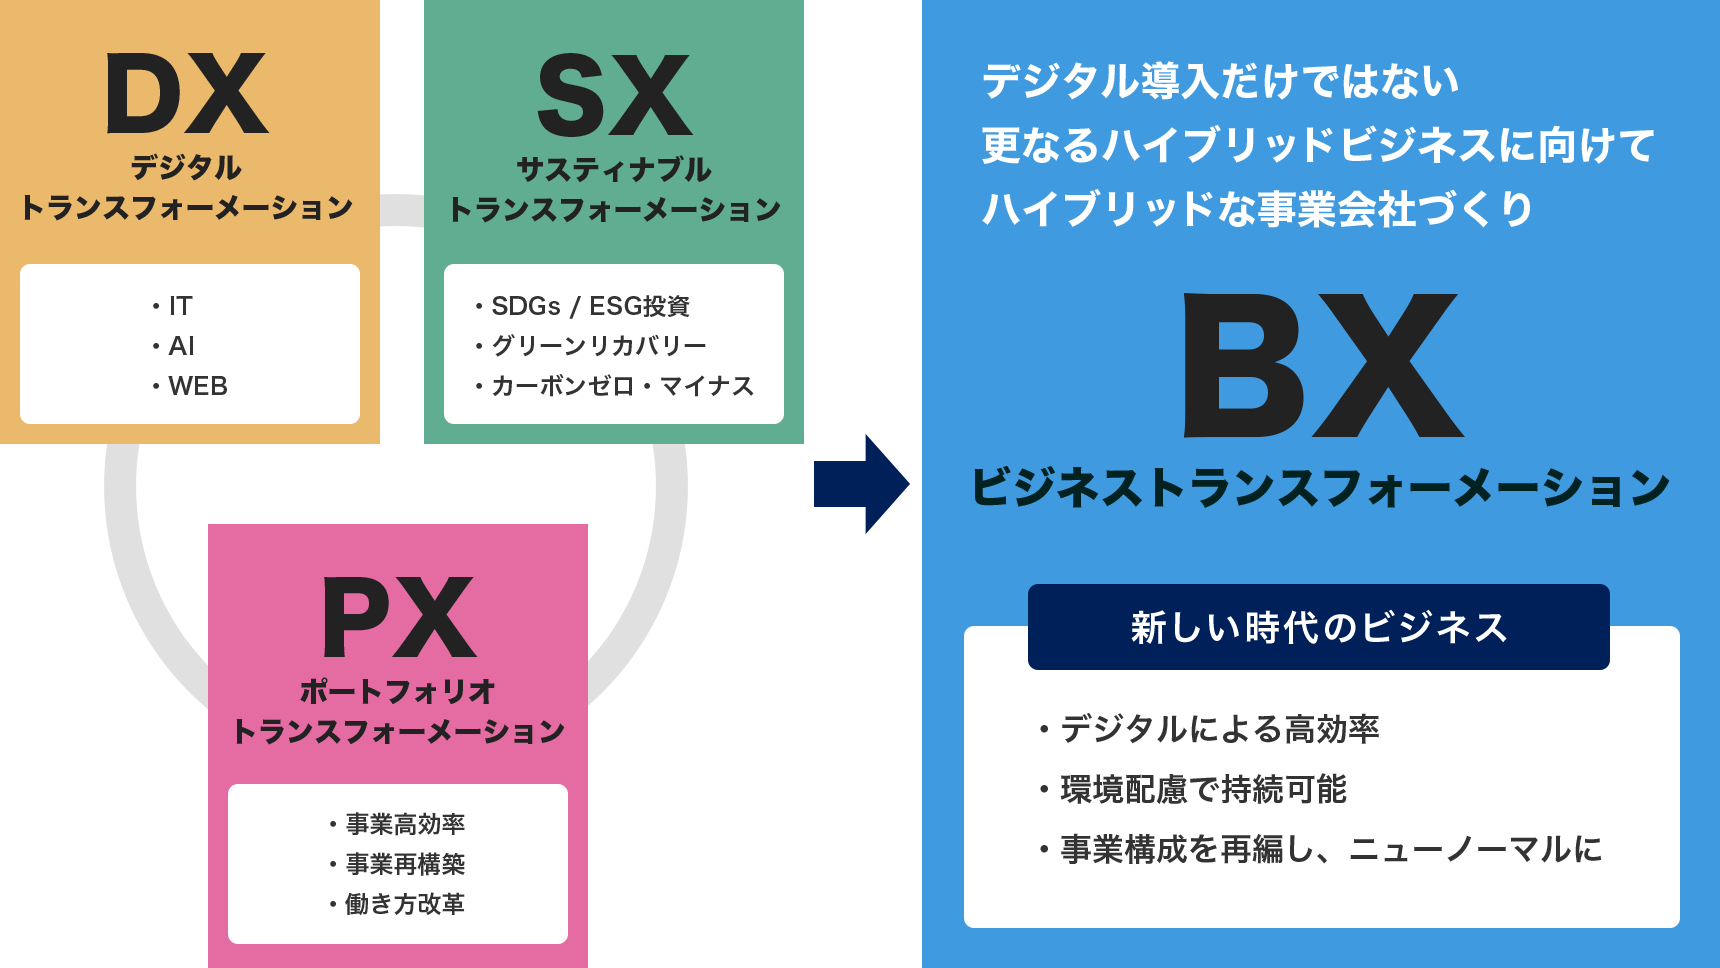 DXを導入しSXに向かうためのPX、そして新しいビジネス2030年までに目指すSDGs・Society 5.0に向けた新事業スタイルへBX